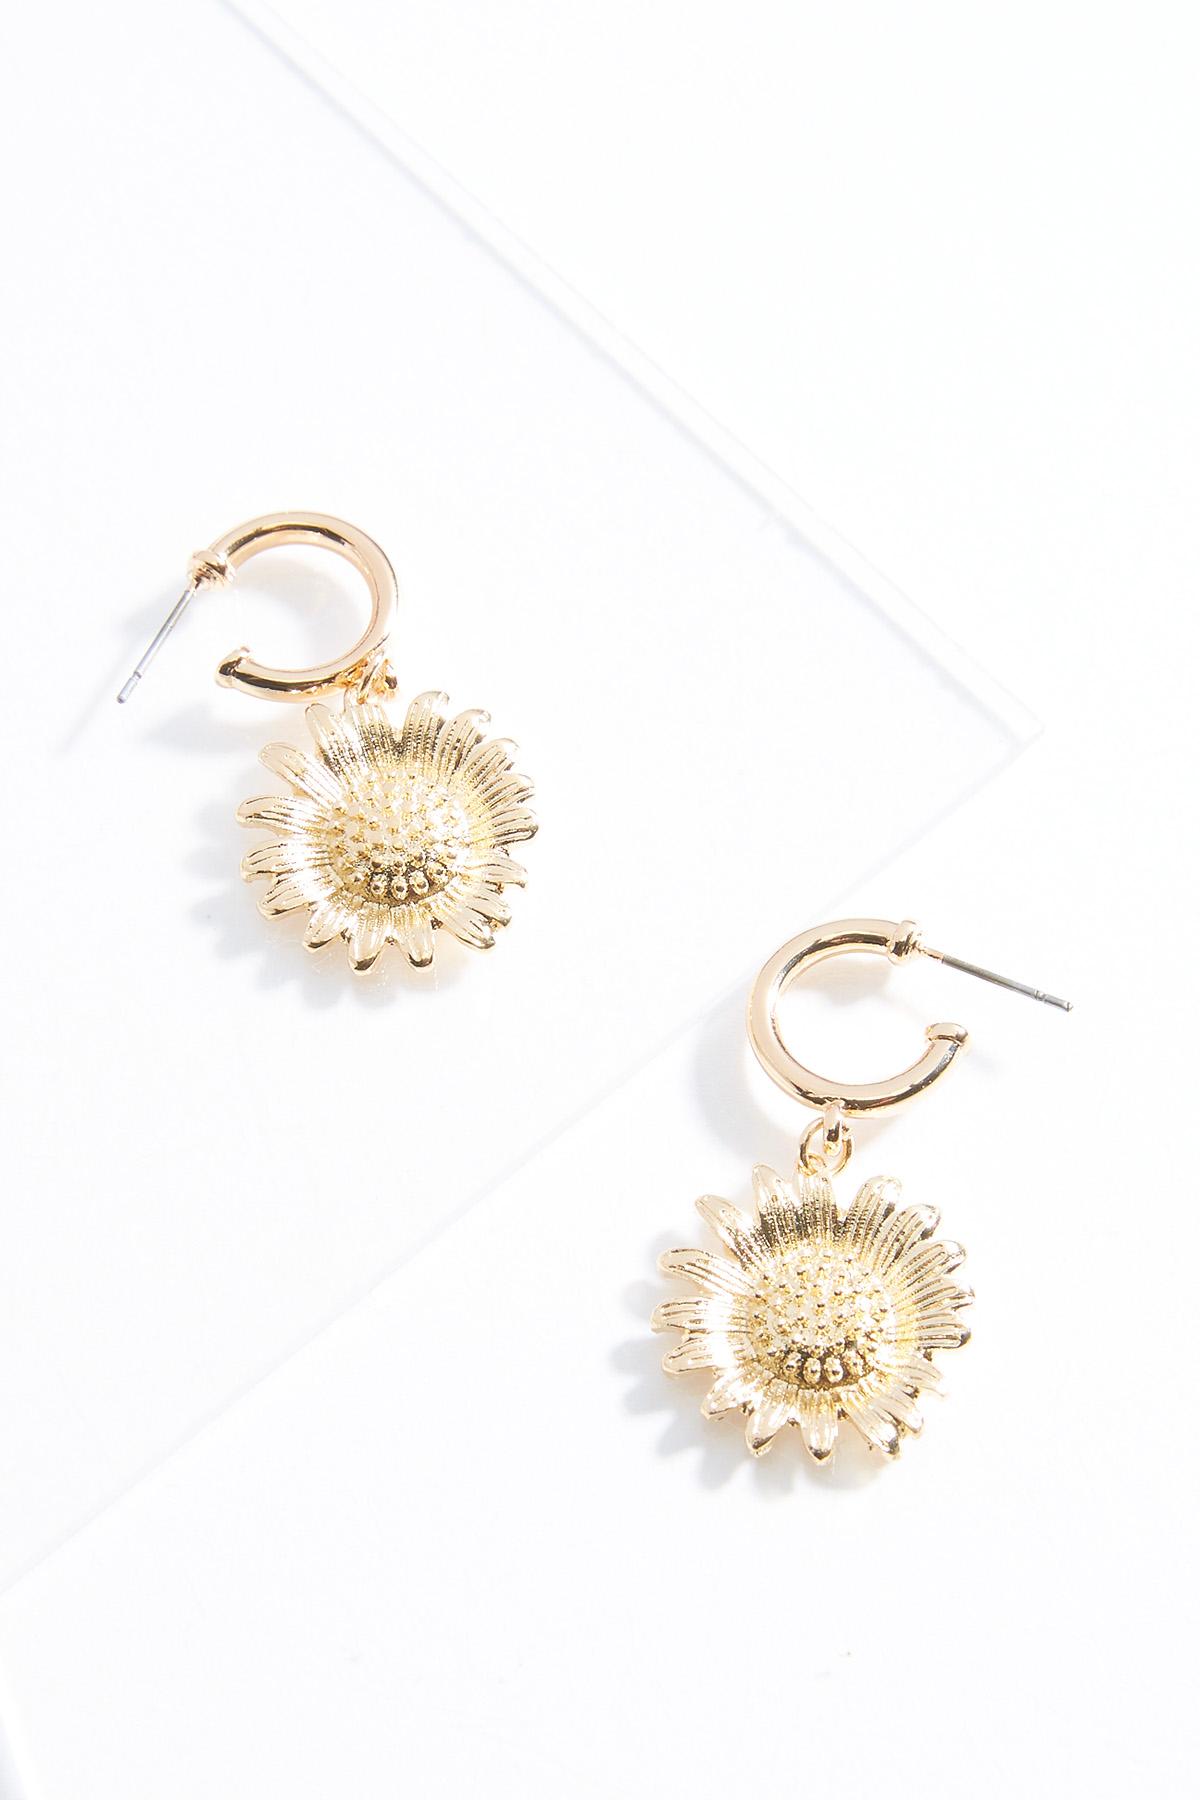 Sunflower Charm Earrings